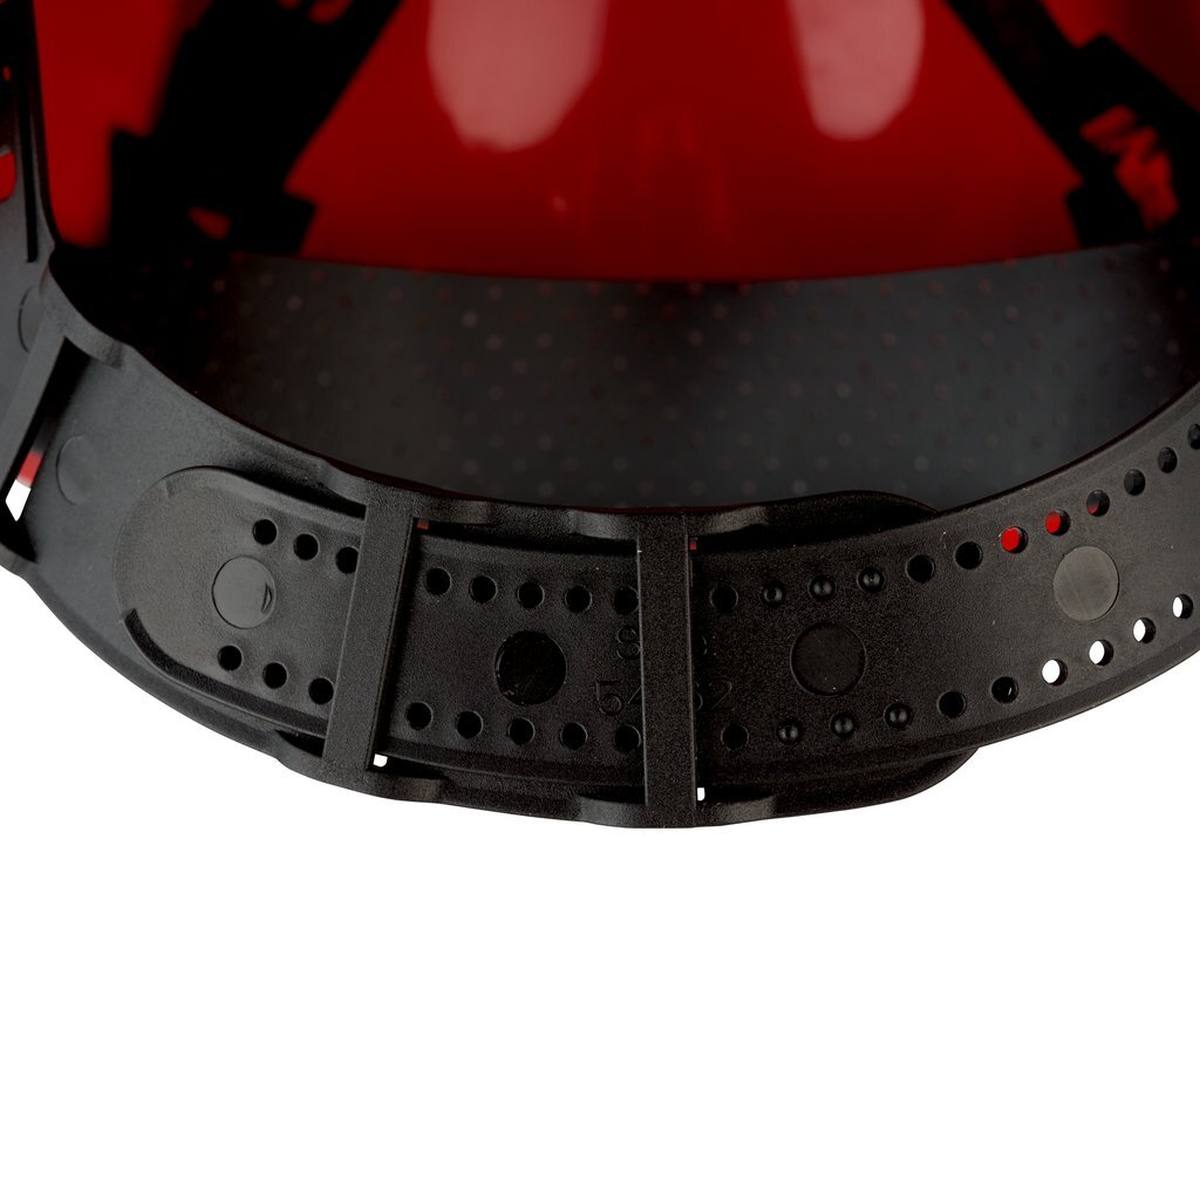 elmetto di sicurezza 3M G3000 G30CUR di colore rosso, ventilato, con uvicatore, pinlock e fascia antisudore in plastica